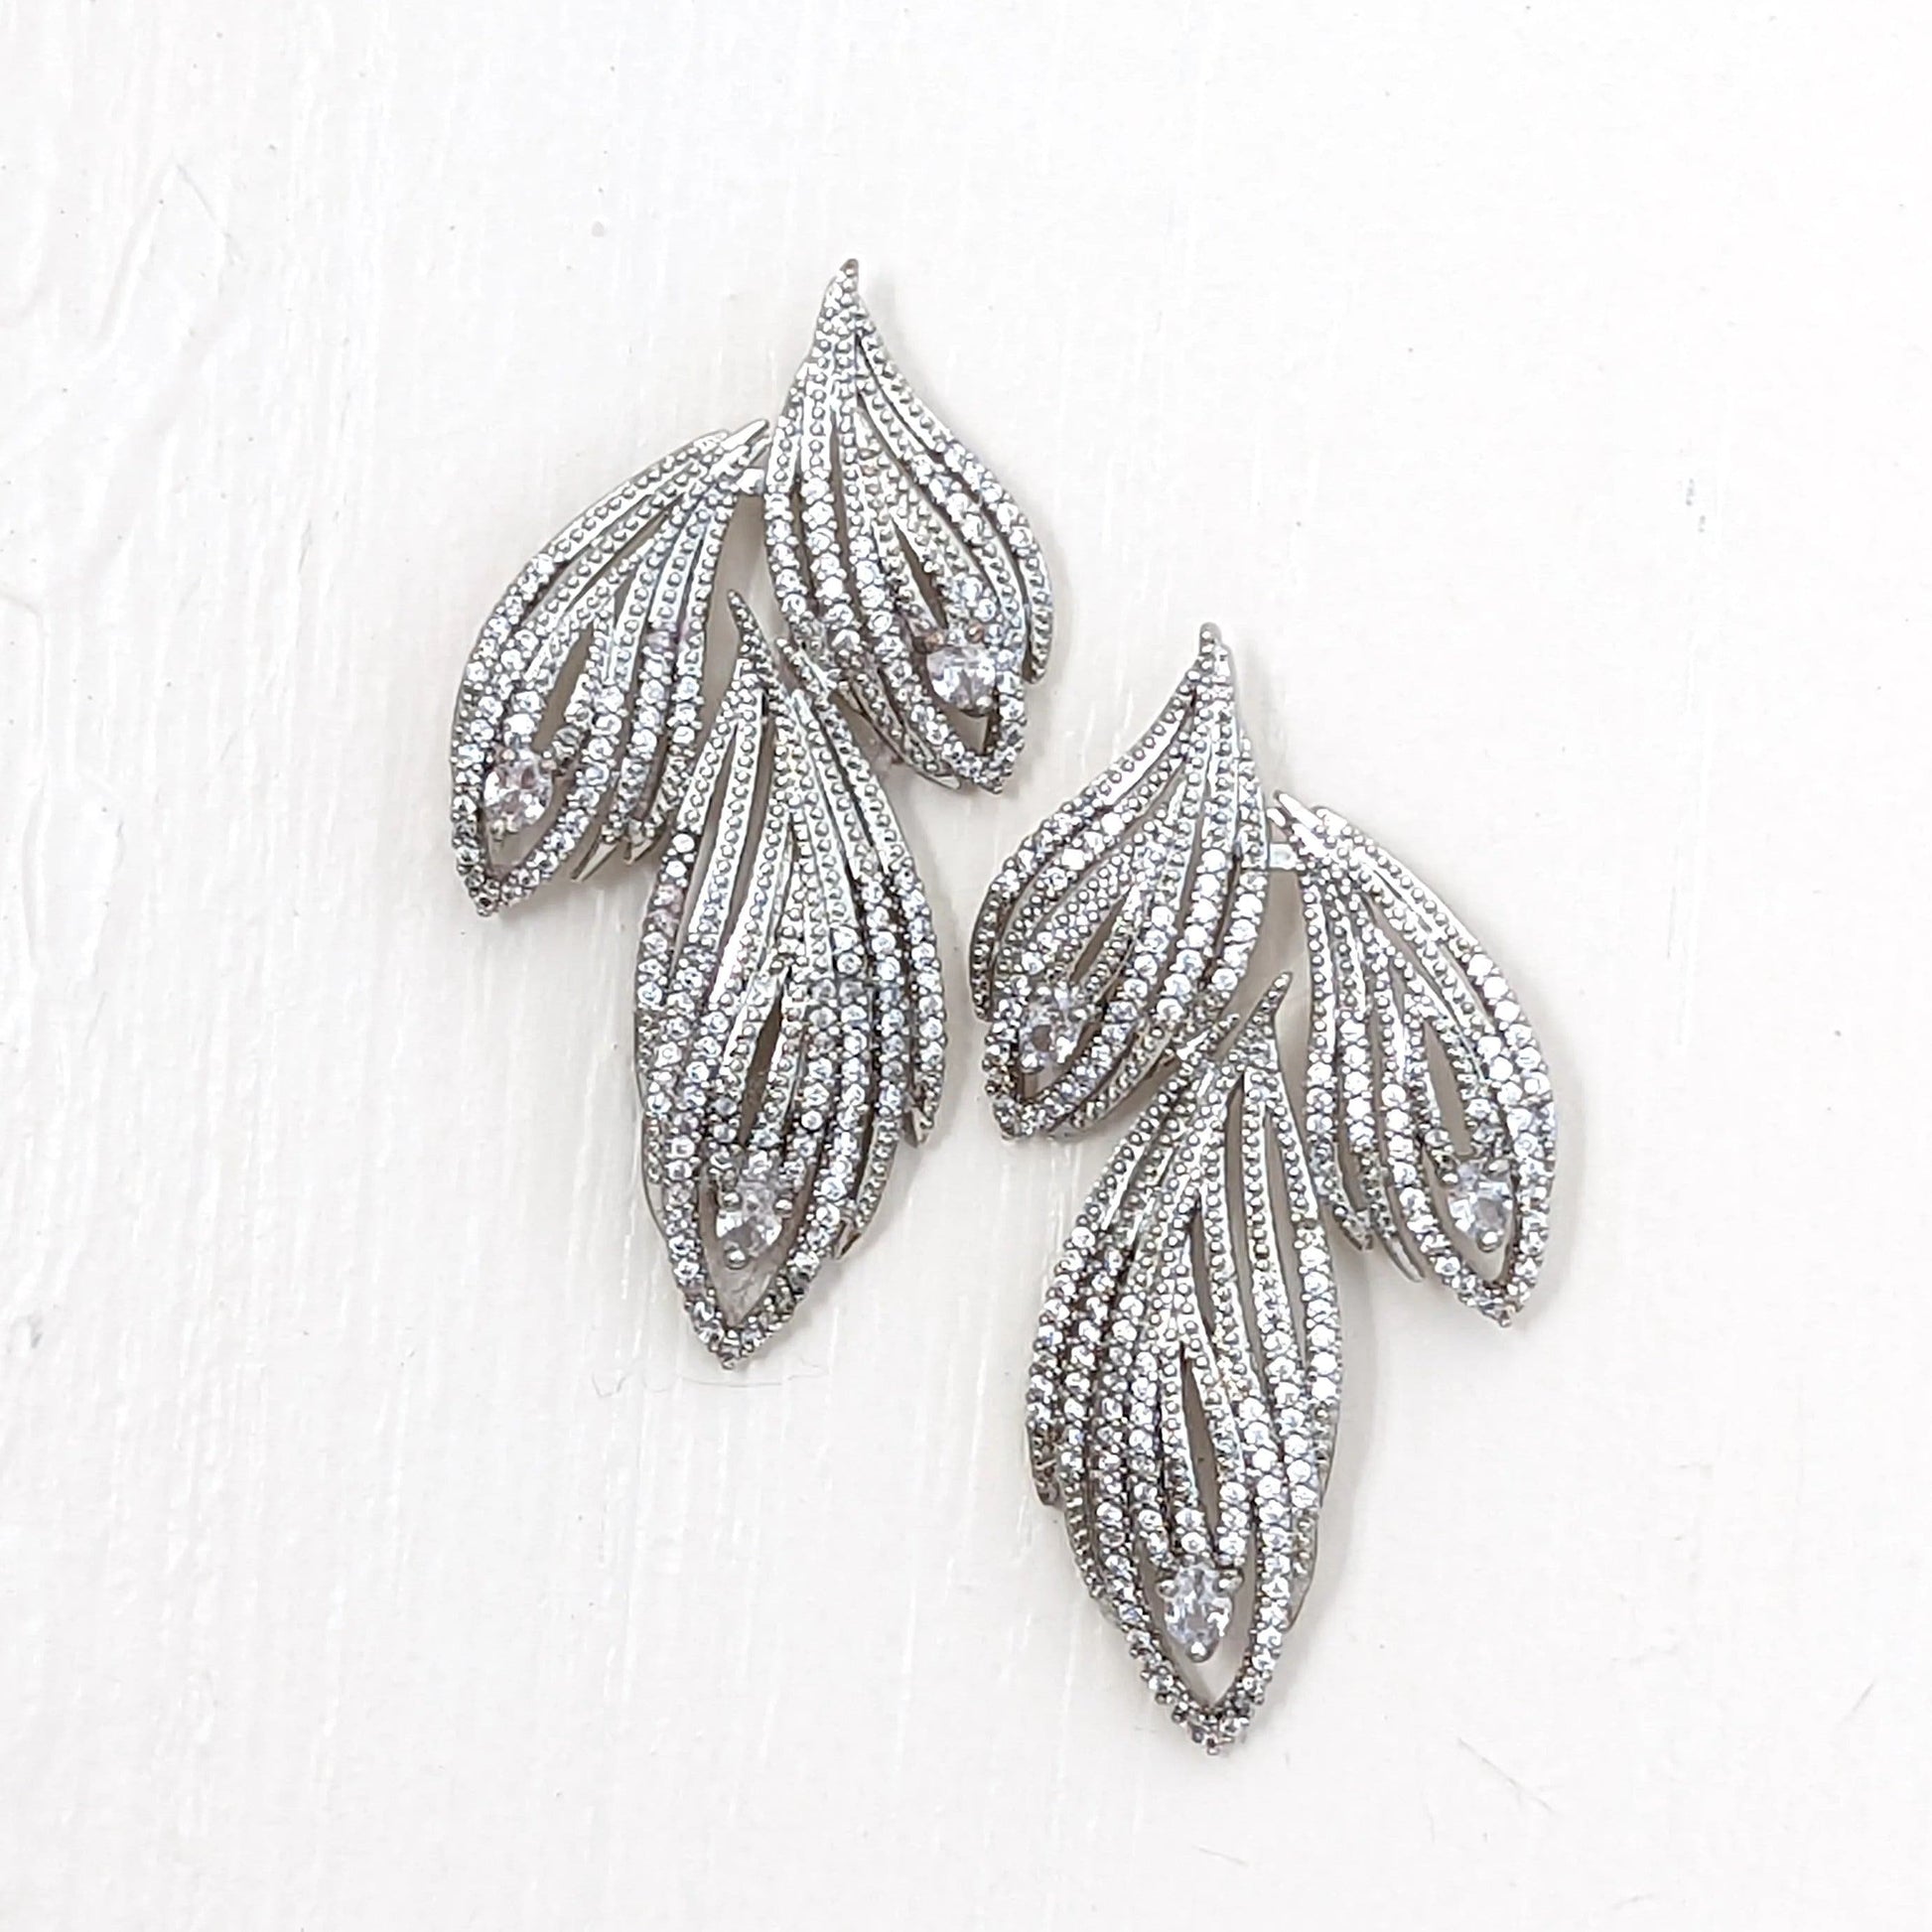 3 leaf earrings, silver chandelier earrings